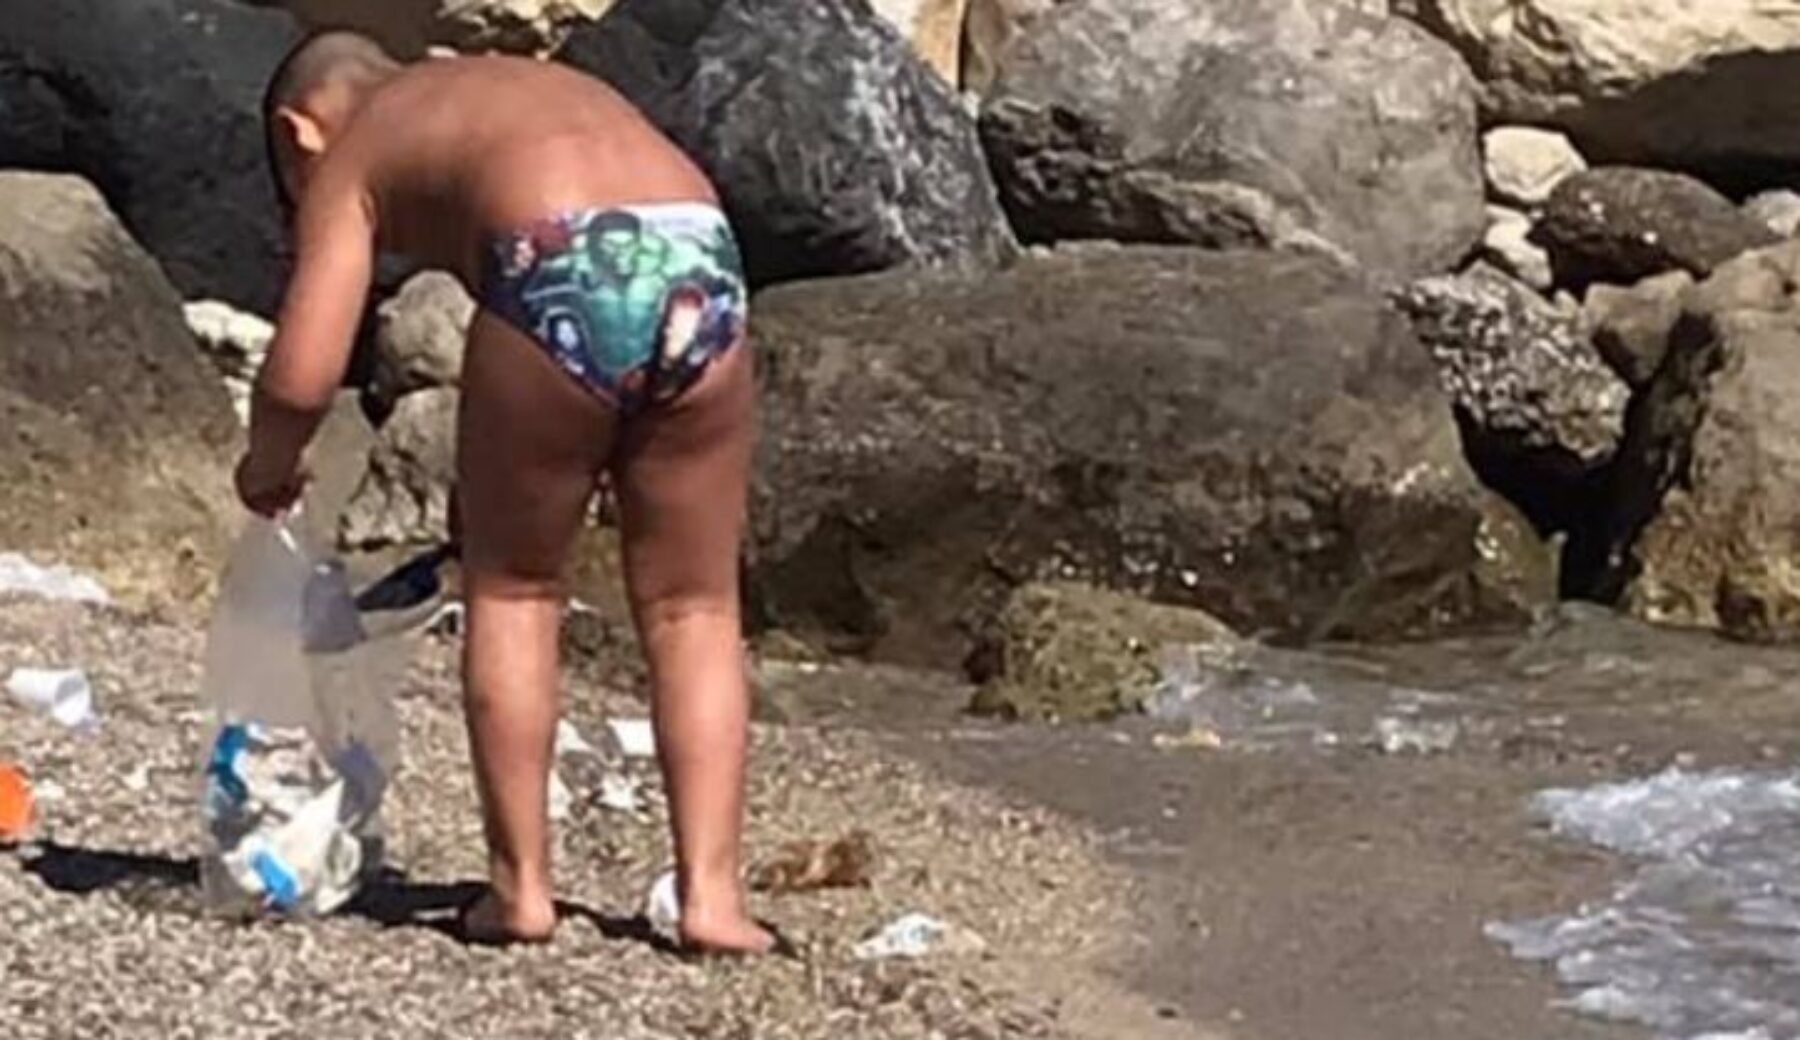 La spiaggia è troppo sporca: bimbo di 7 anni la ripulisce da mozziconi e rifiuti